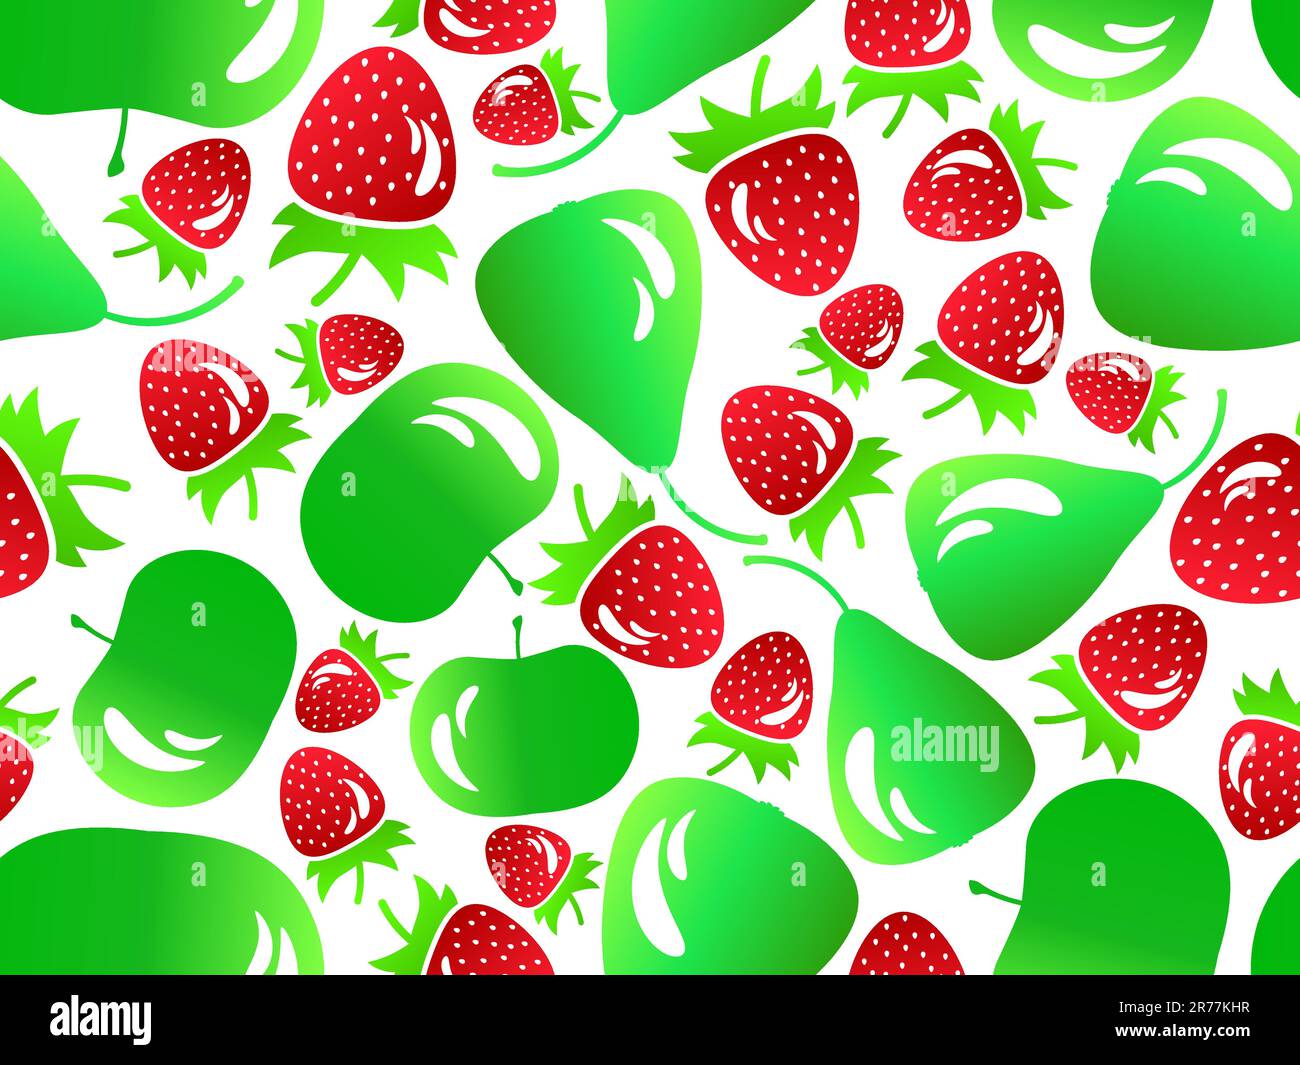 Nahtloses Muster mit Erdbeere, Apfel und Birne im 3D-Stil. Leicht reflektierende Früchte, grüner Apfel und Birne und rote Erdbeere. Design für Druck, Stock Vektor